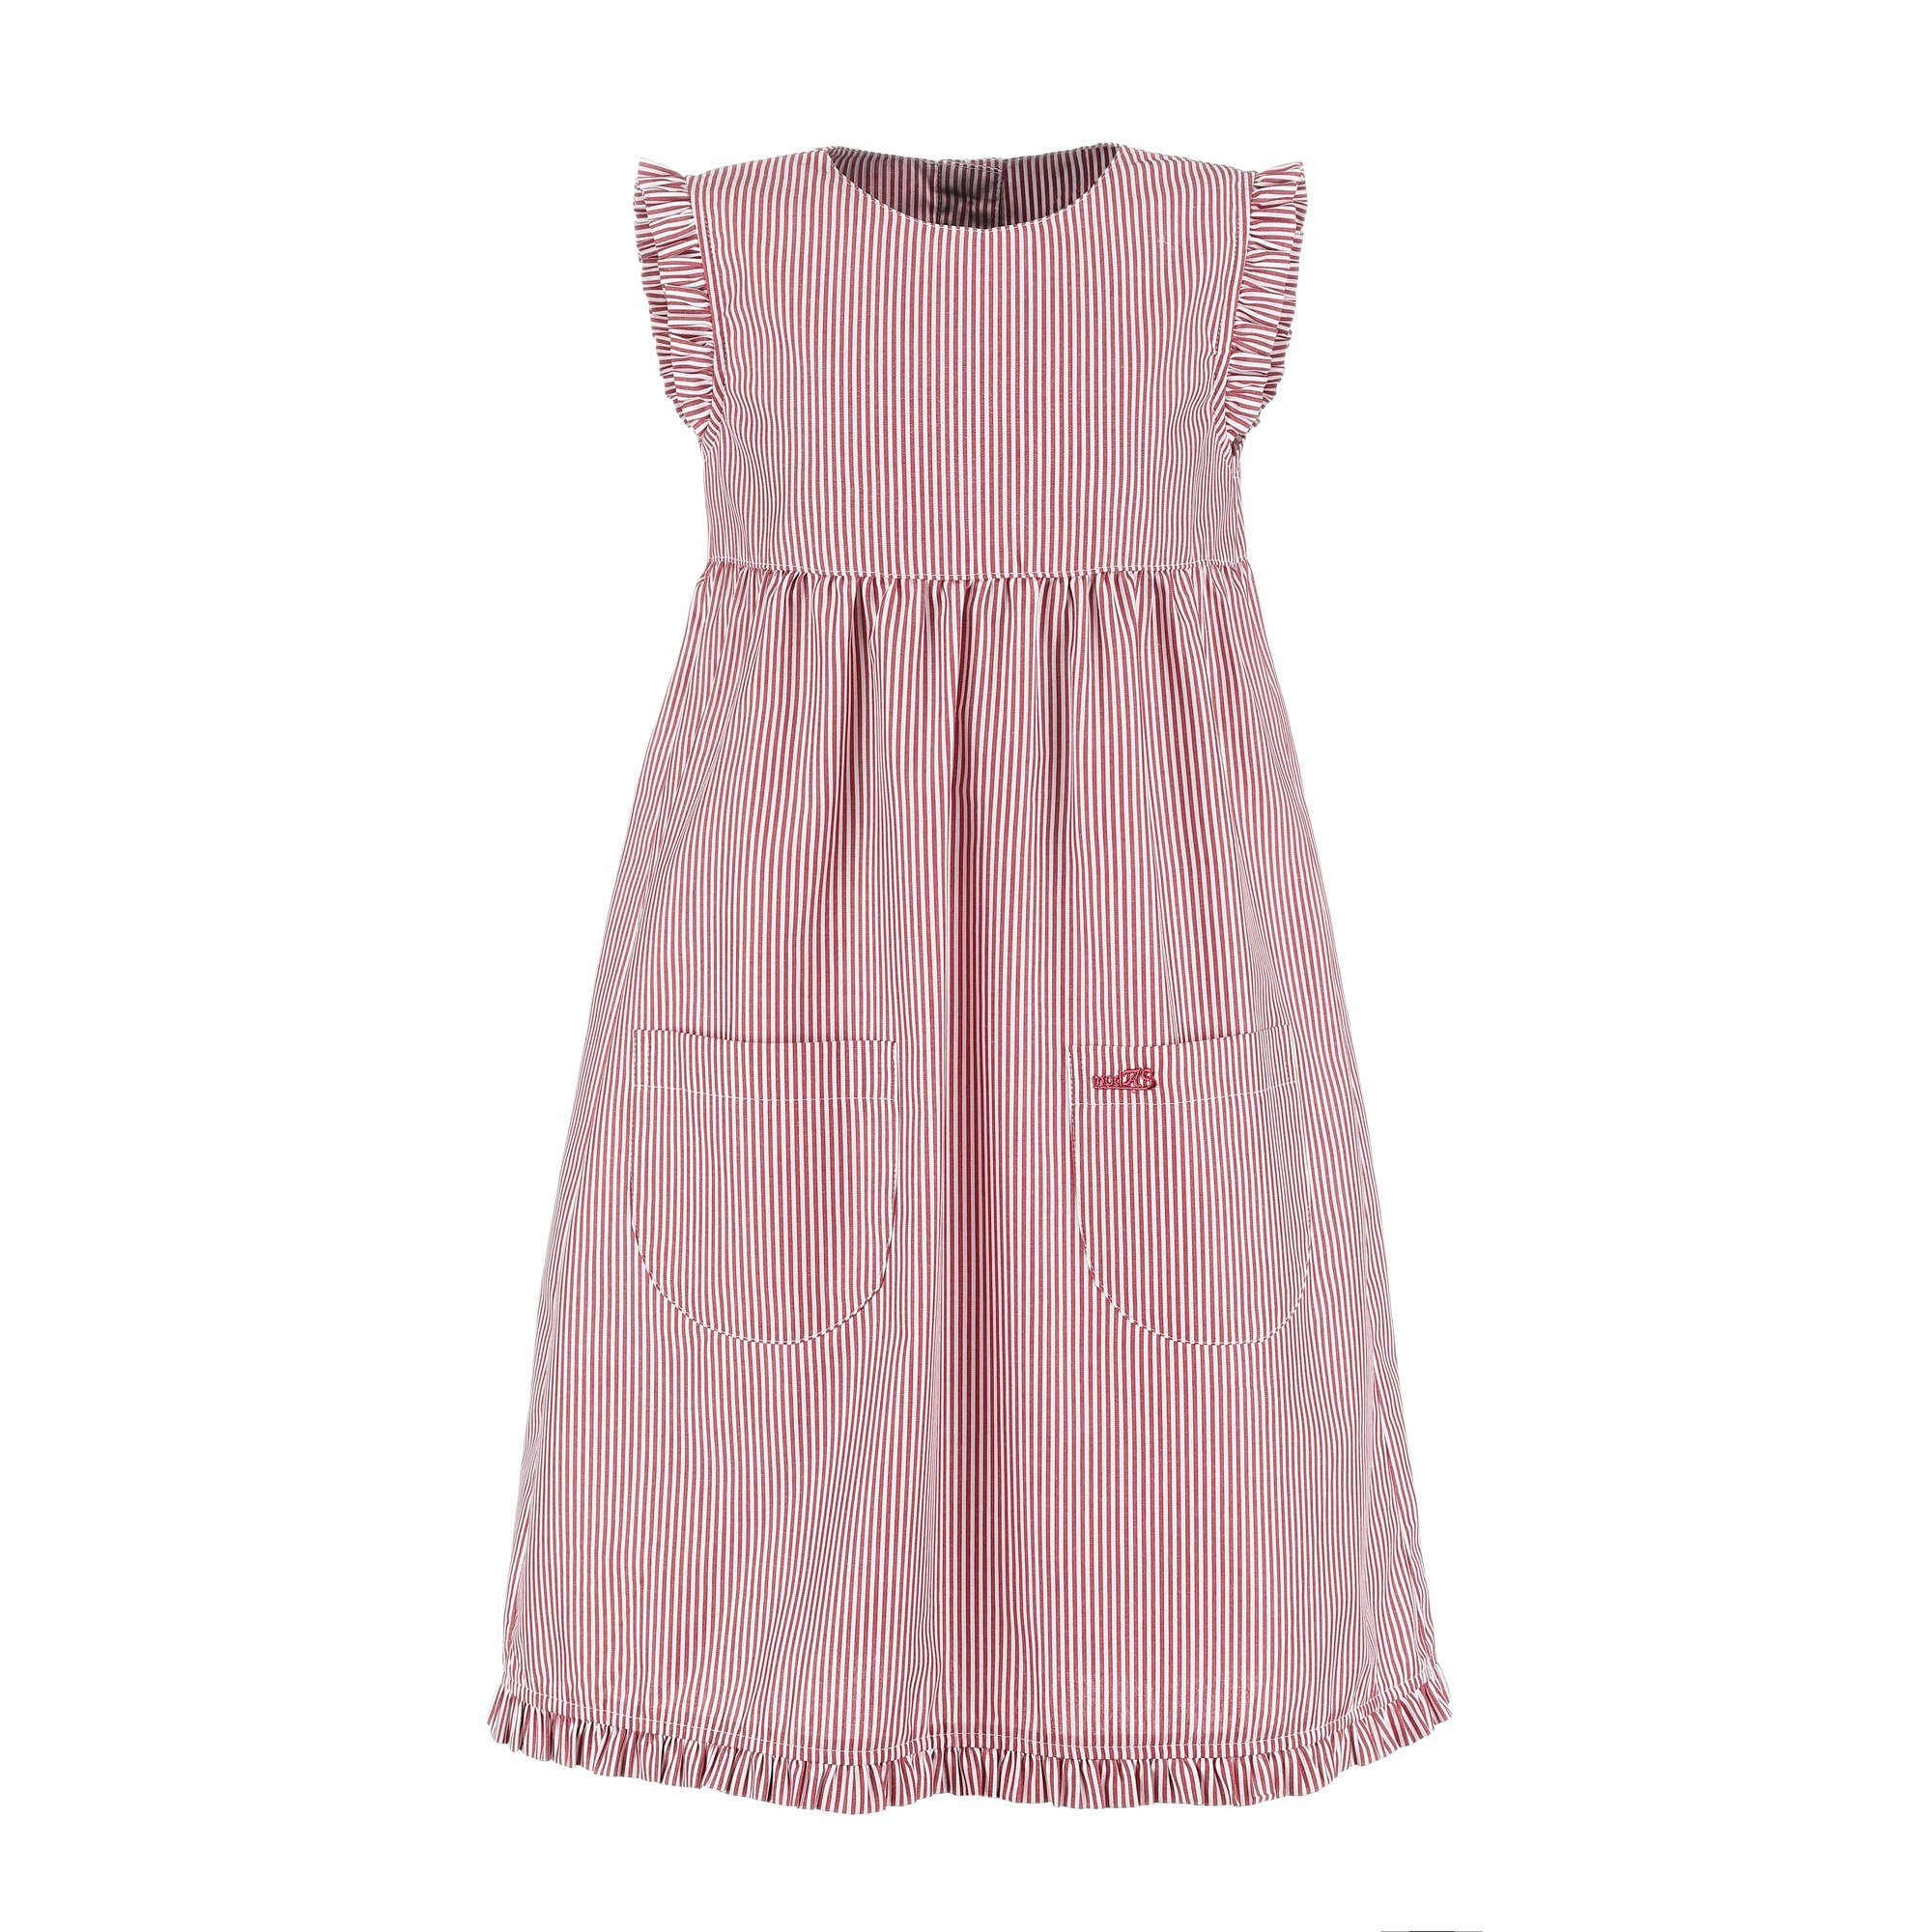 modAS Sommerkleid Kinder gestreift rot/weiß (023) Rüschen Kleid Streifen - Mädchenkleid mit mit gestreift